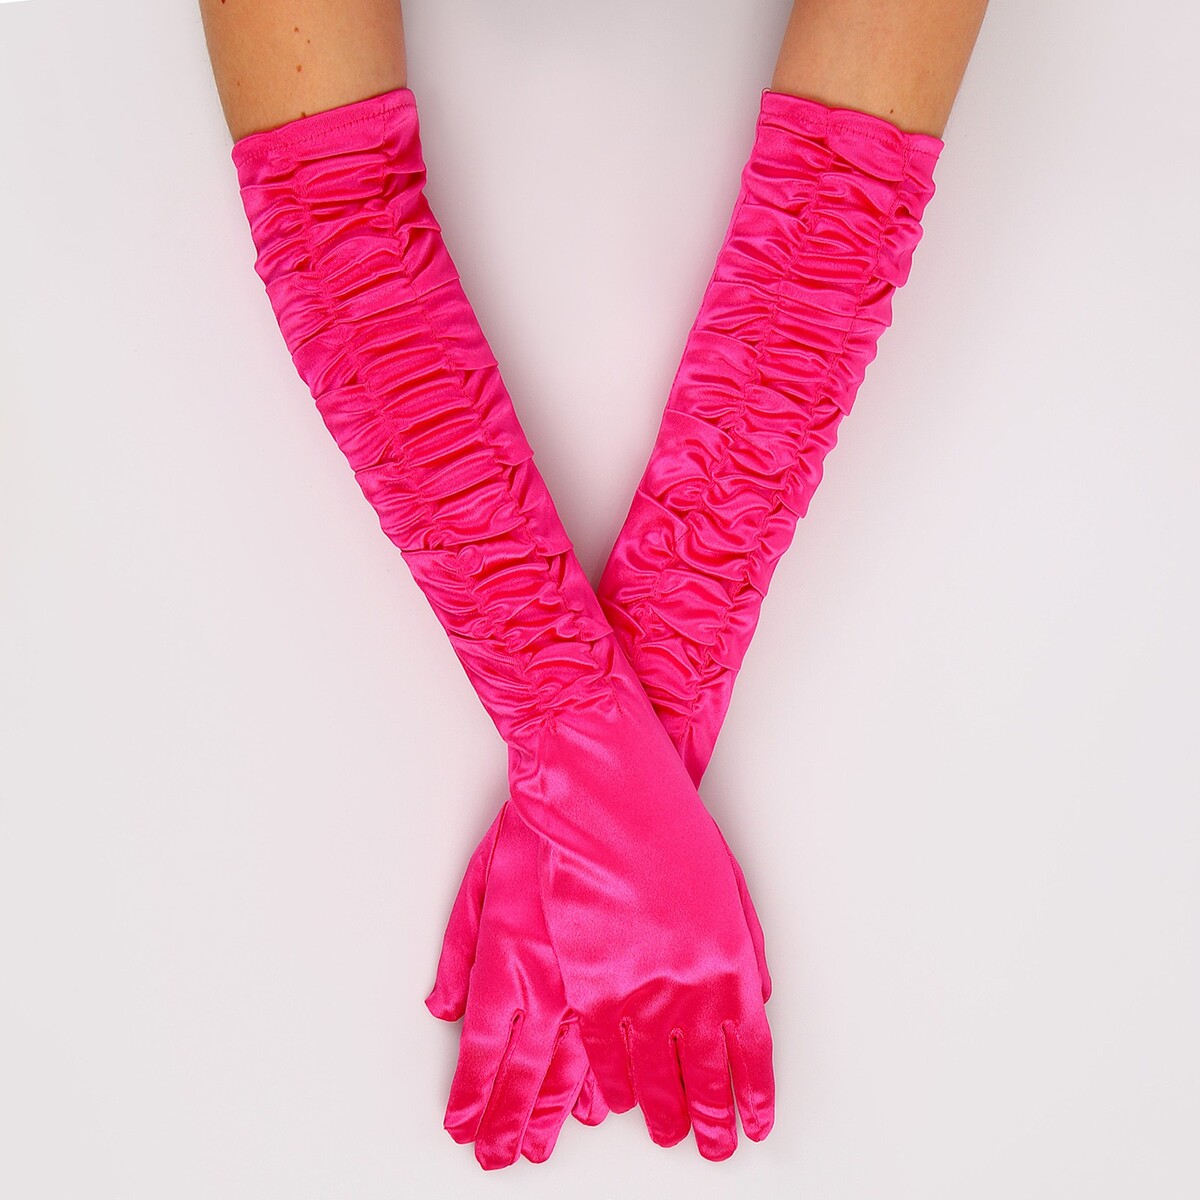 Карнавальный аксессуар - перчатки со сборкой, цвет фуксия карнавальный аксессуар перчатки розовый металлик искусственная кожа